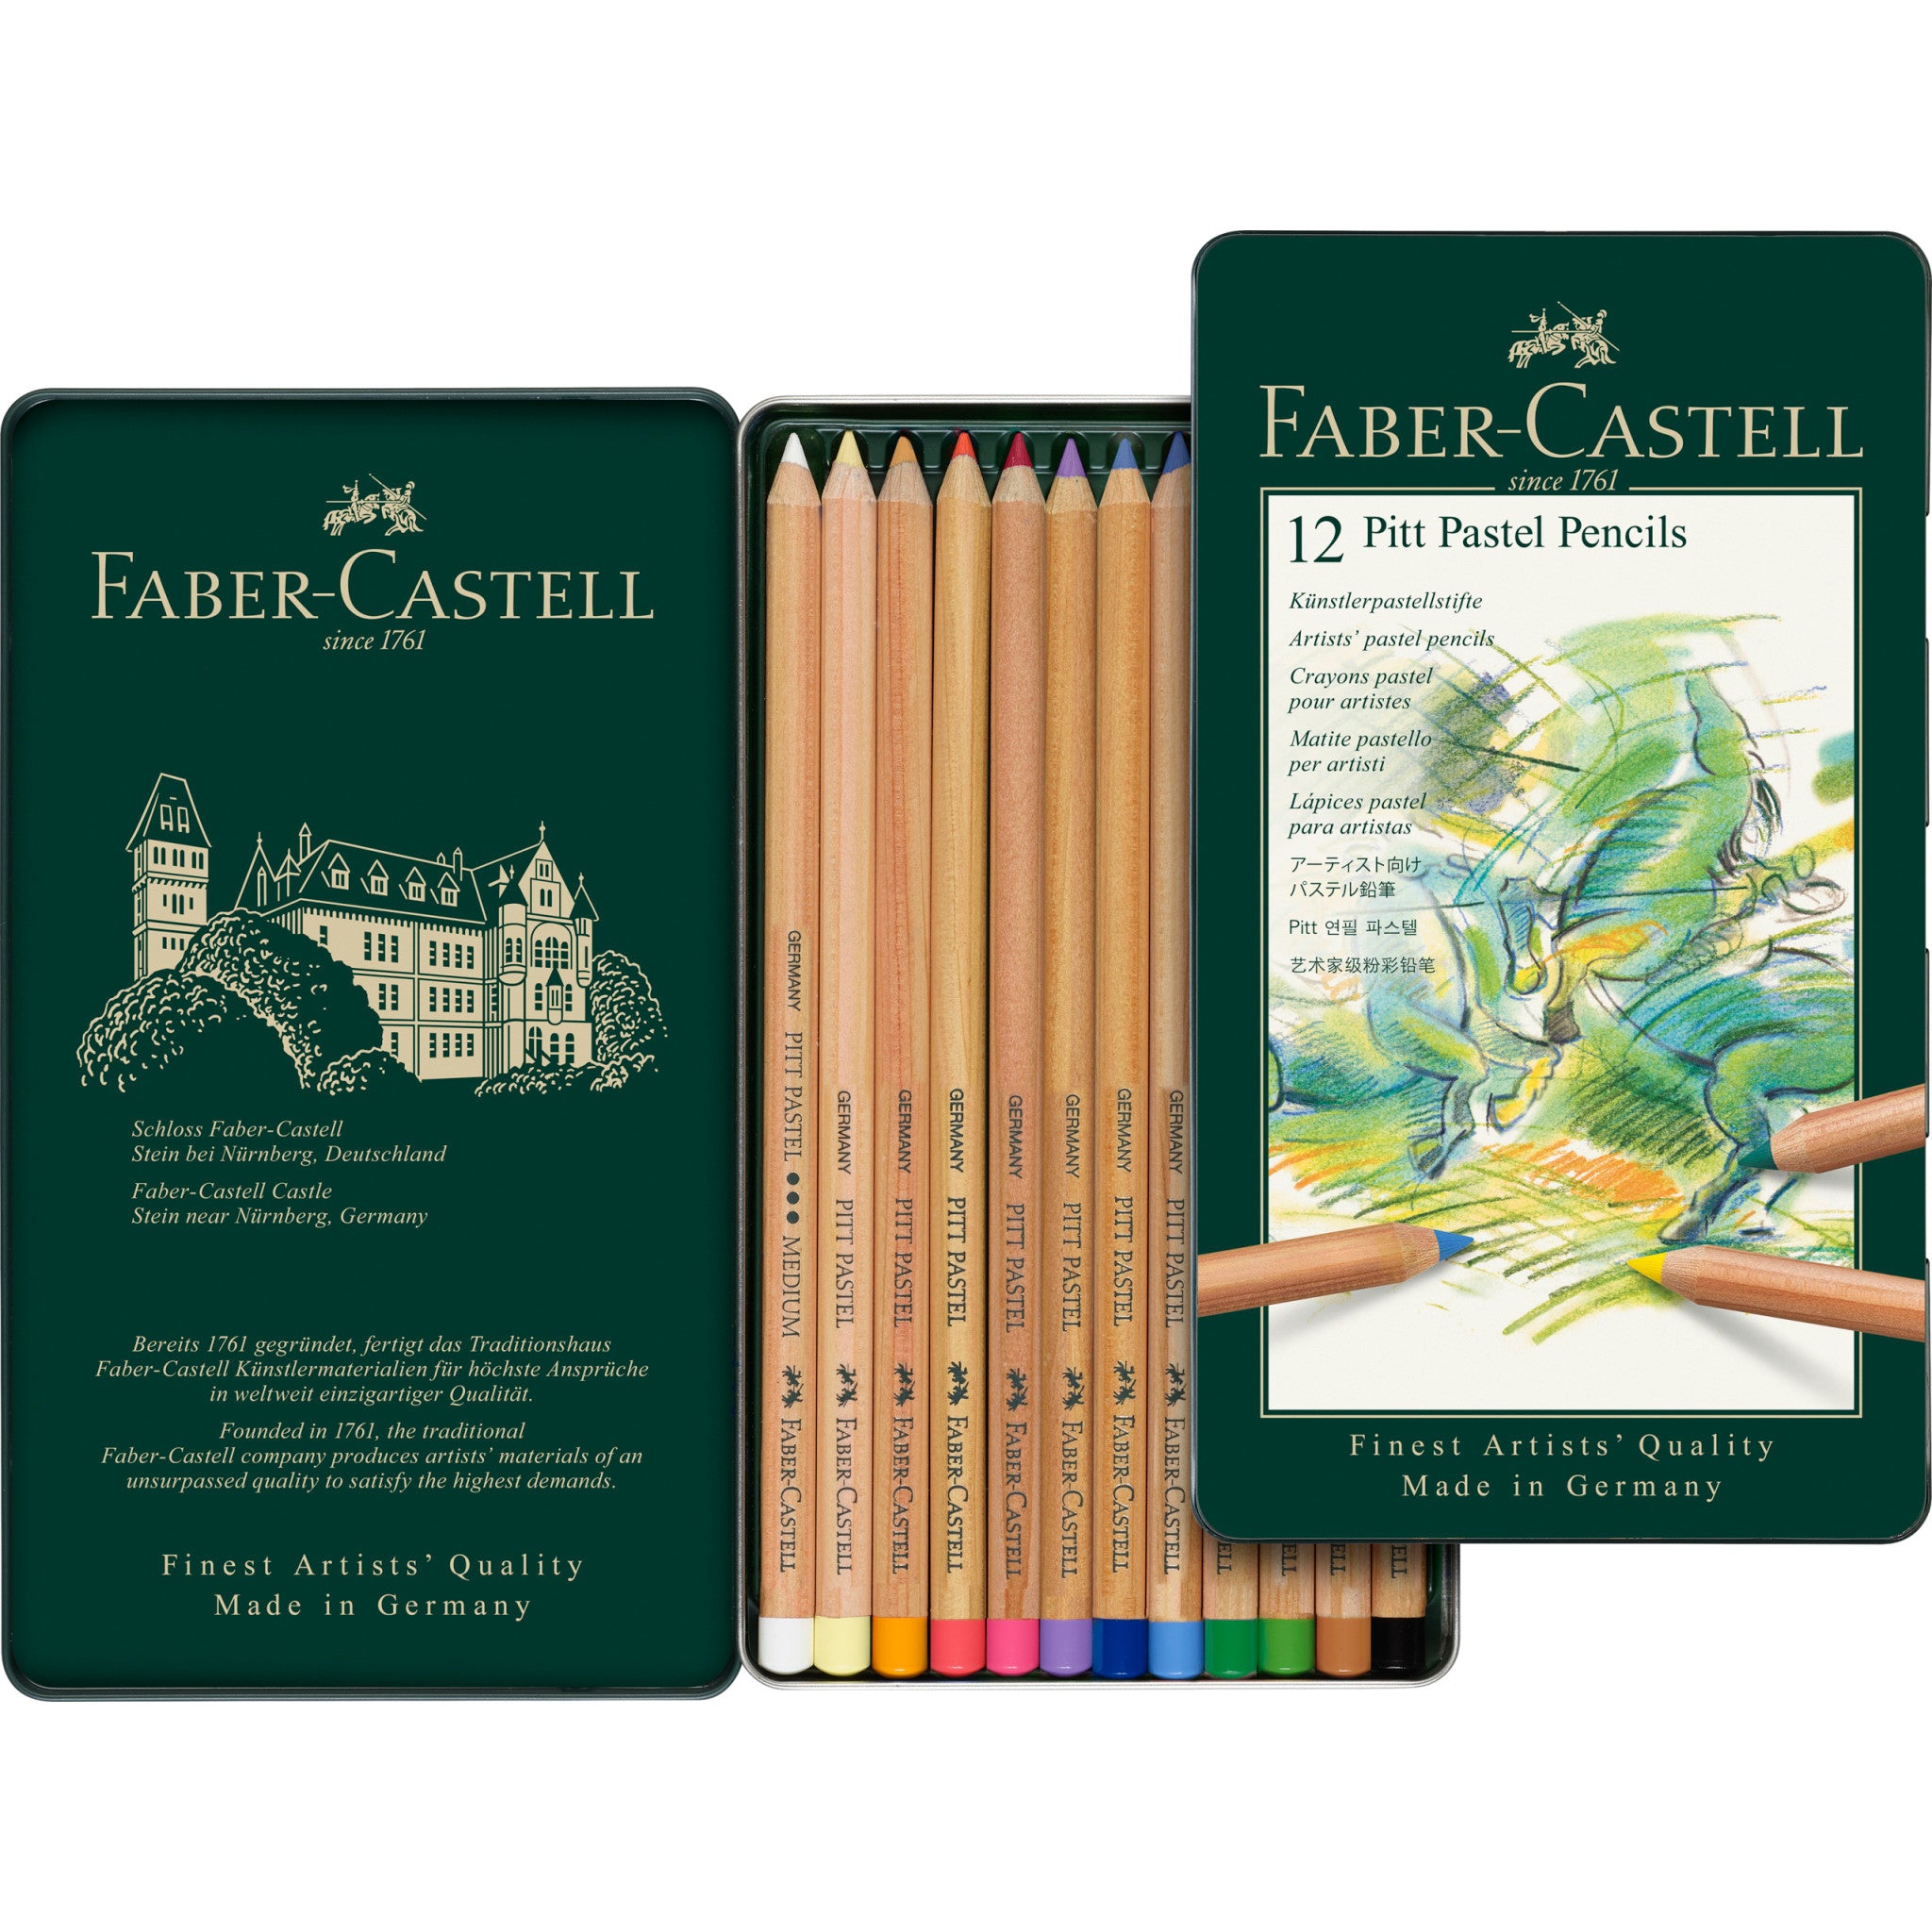 Faber-castell crayon de couleur sparkle pastel, étui de 12